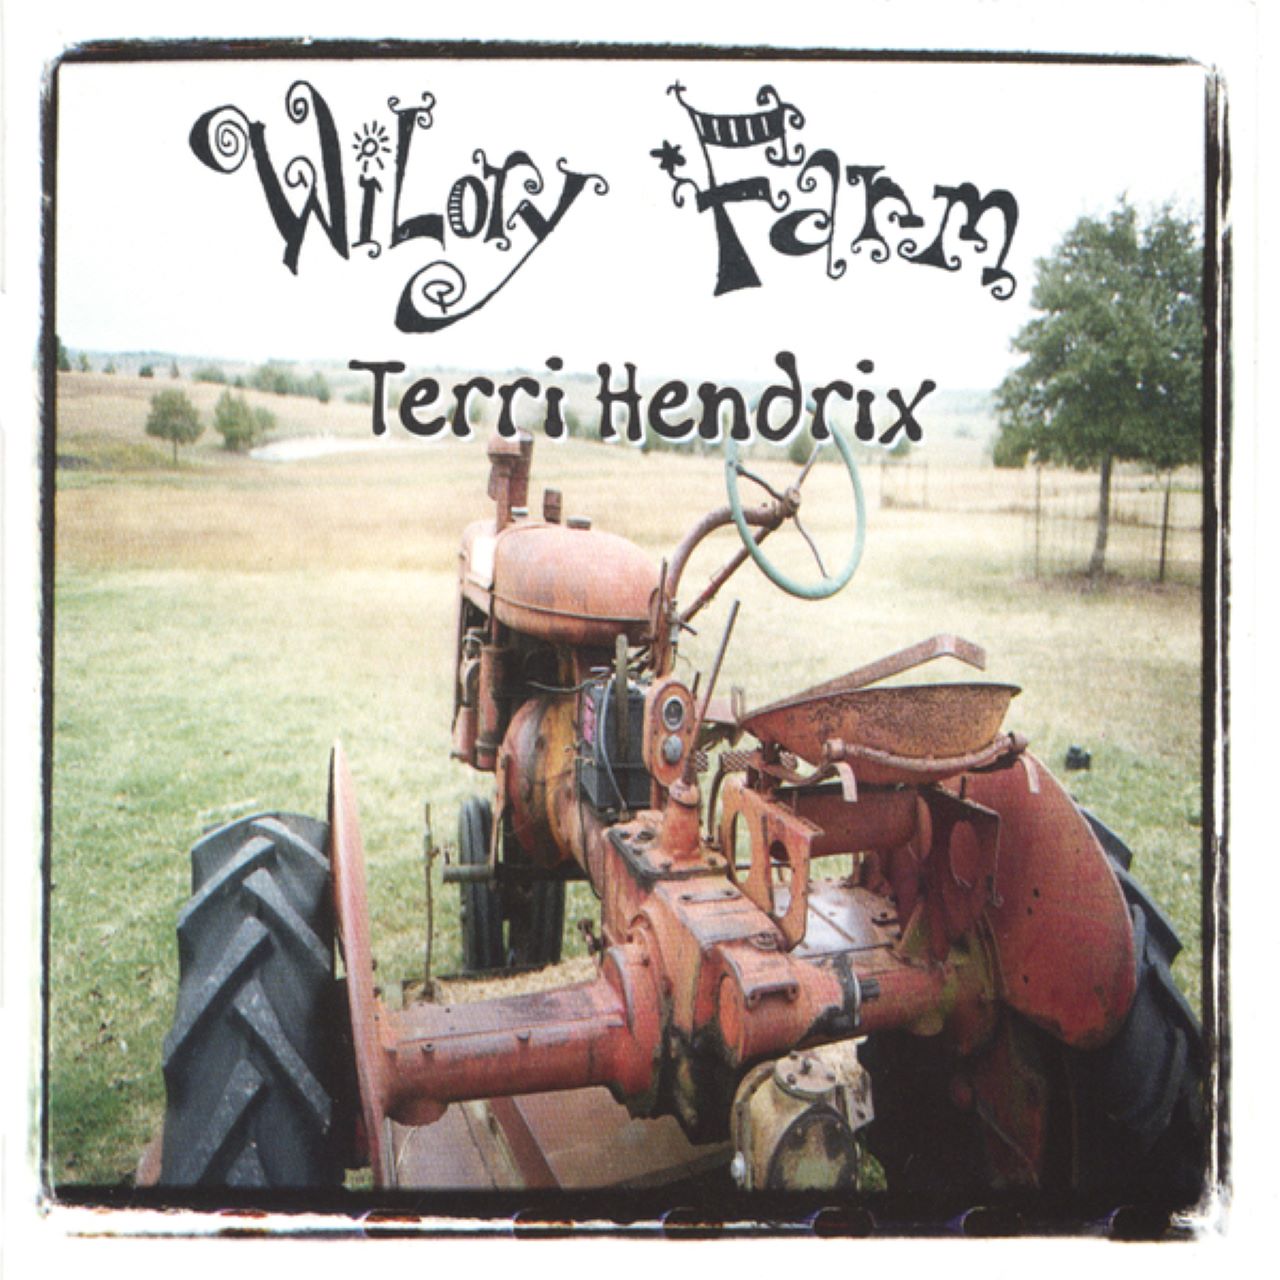 Terry Hendrix - Wilory Farm cover album